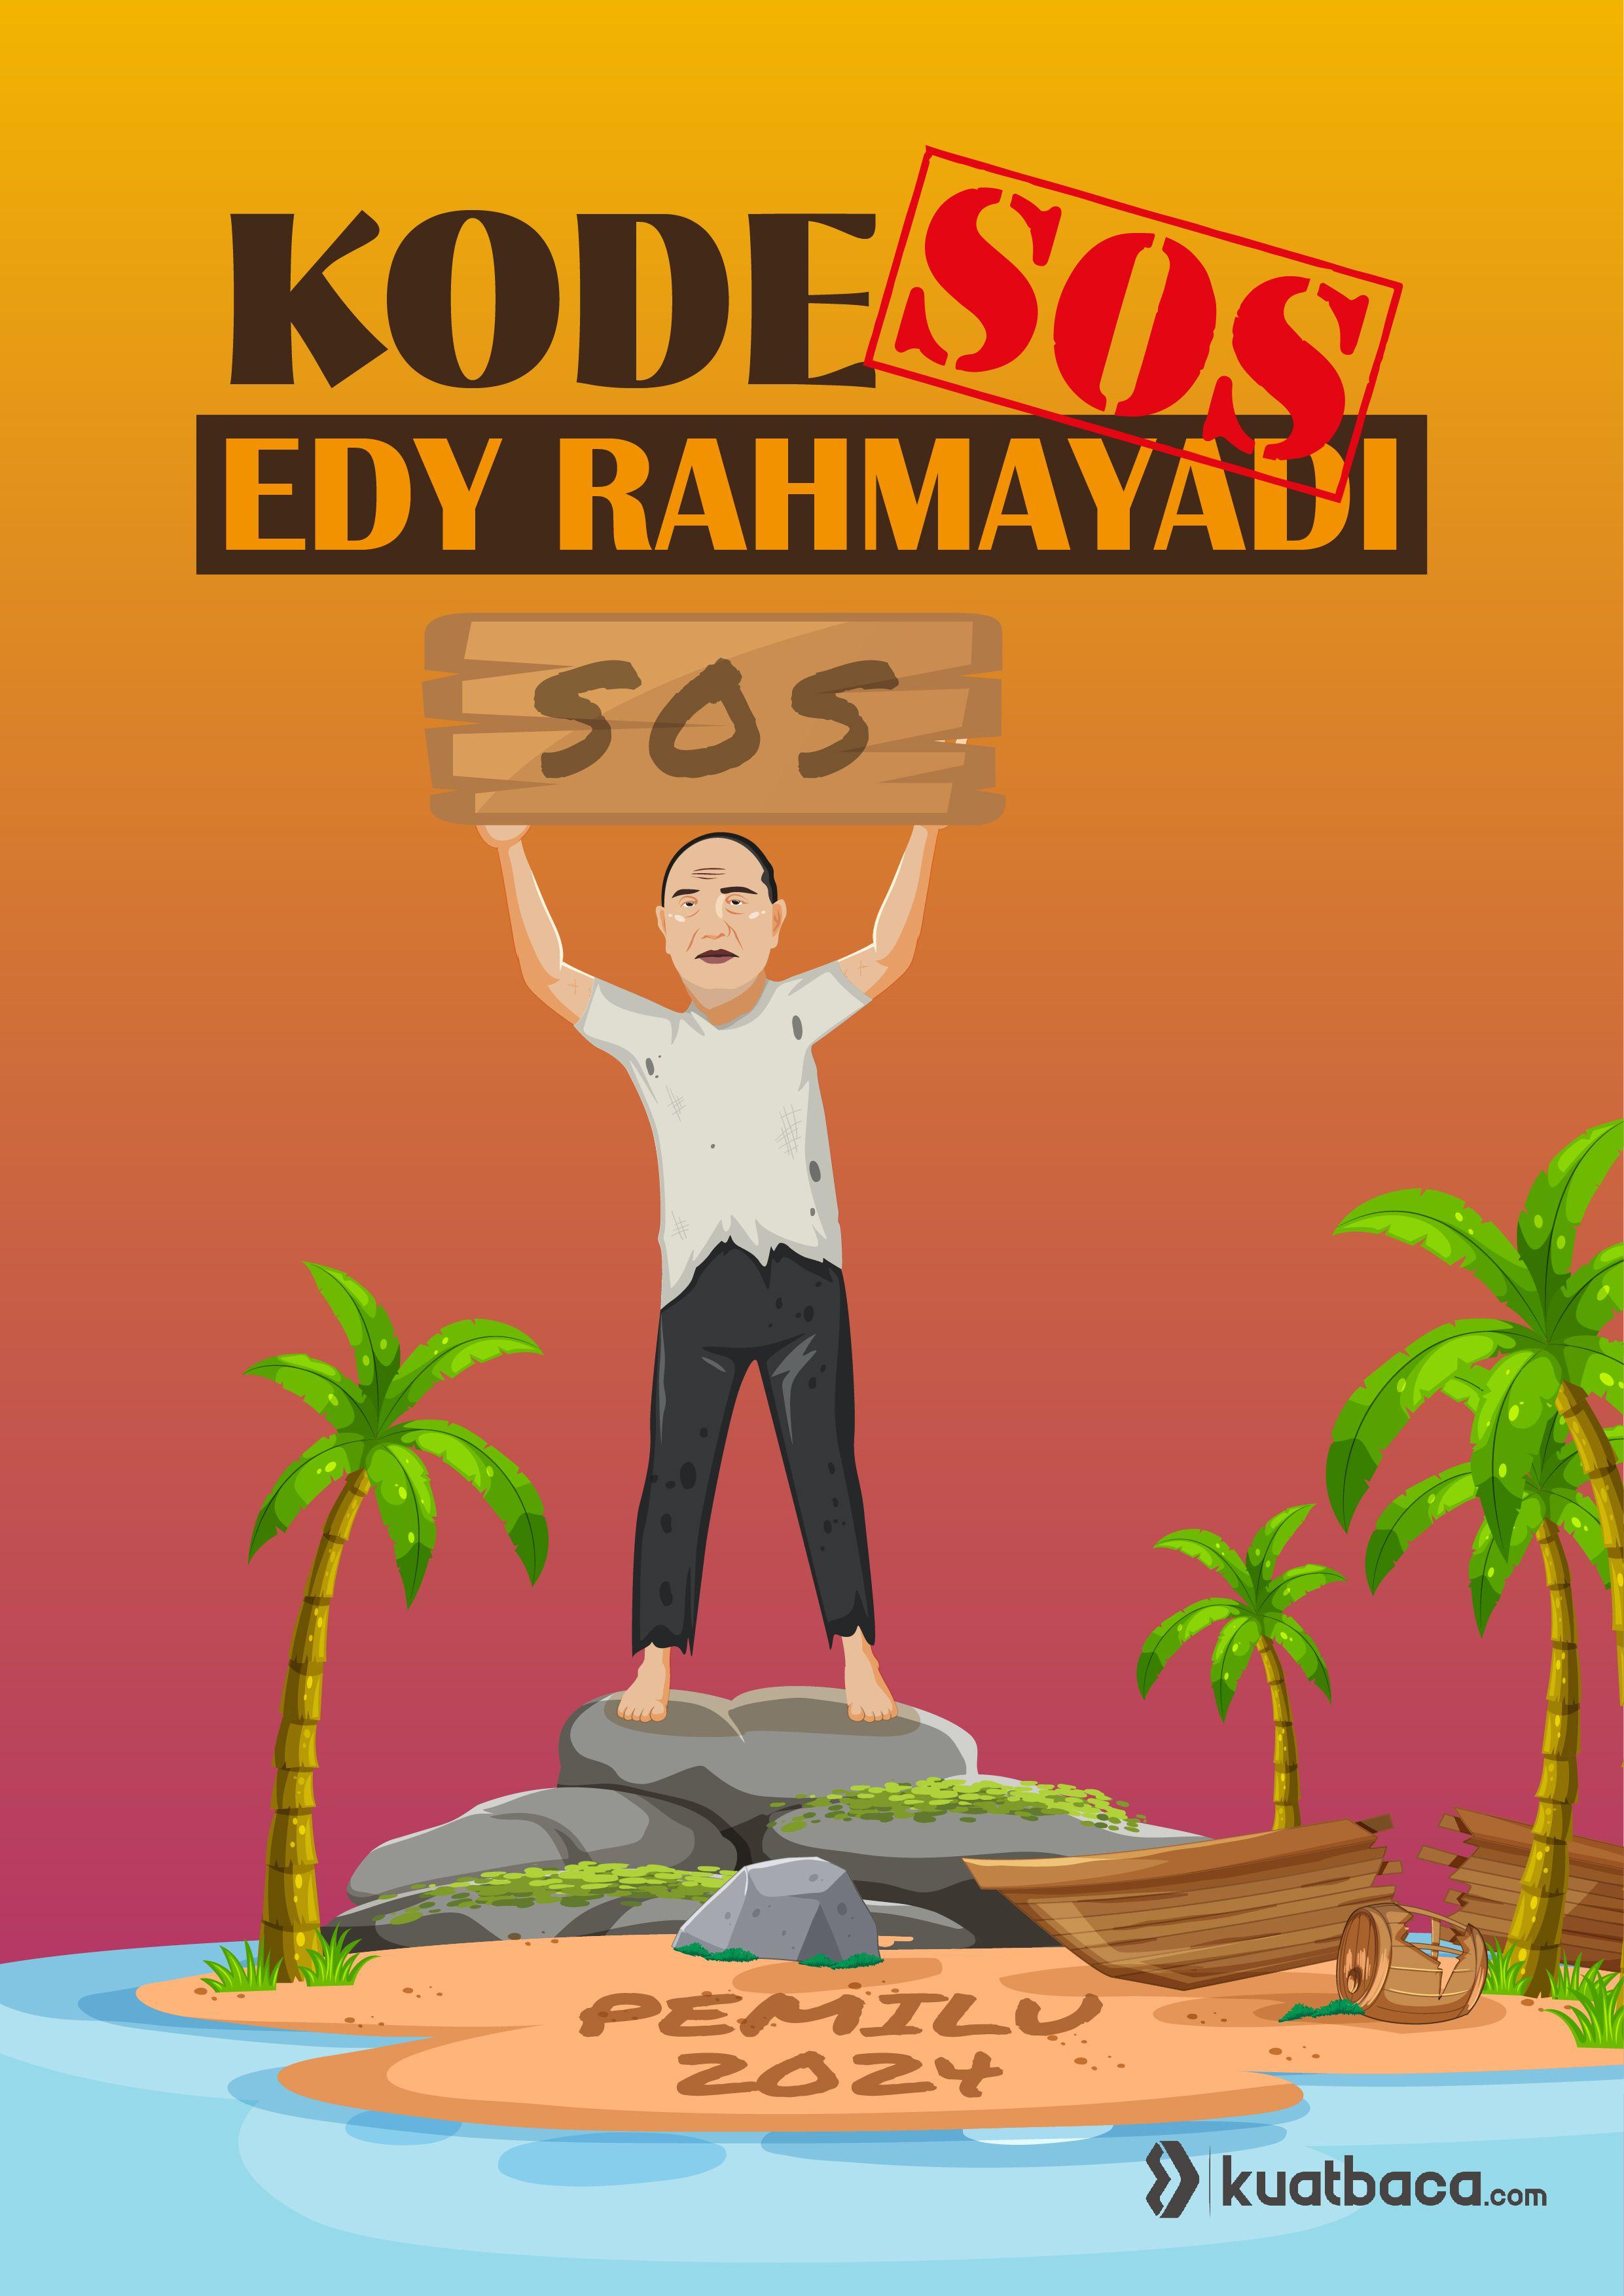 Kode SOS Edy Rahmayadi 